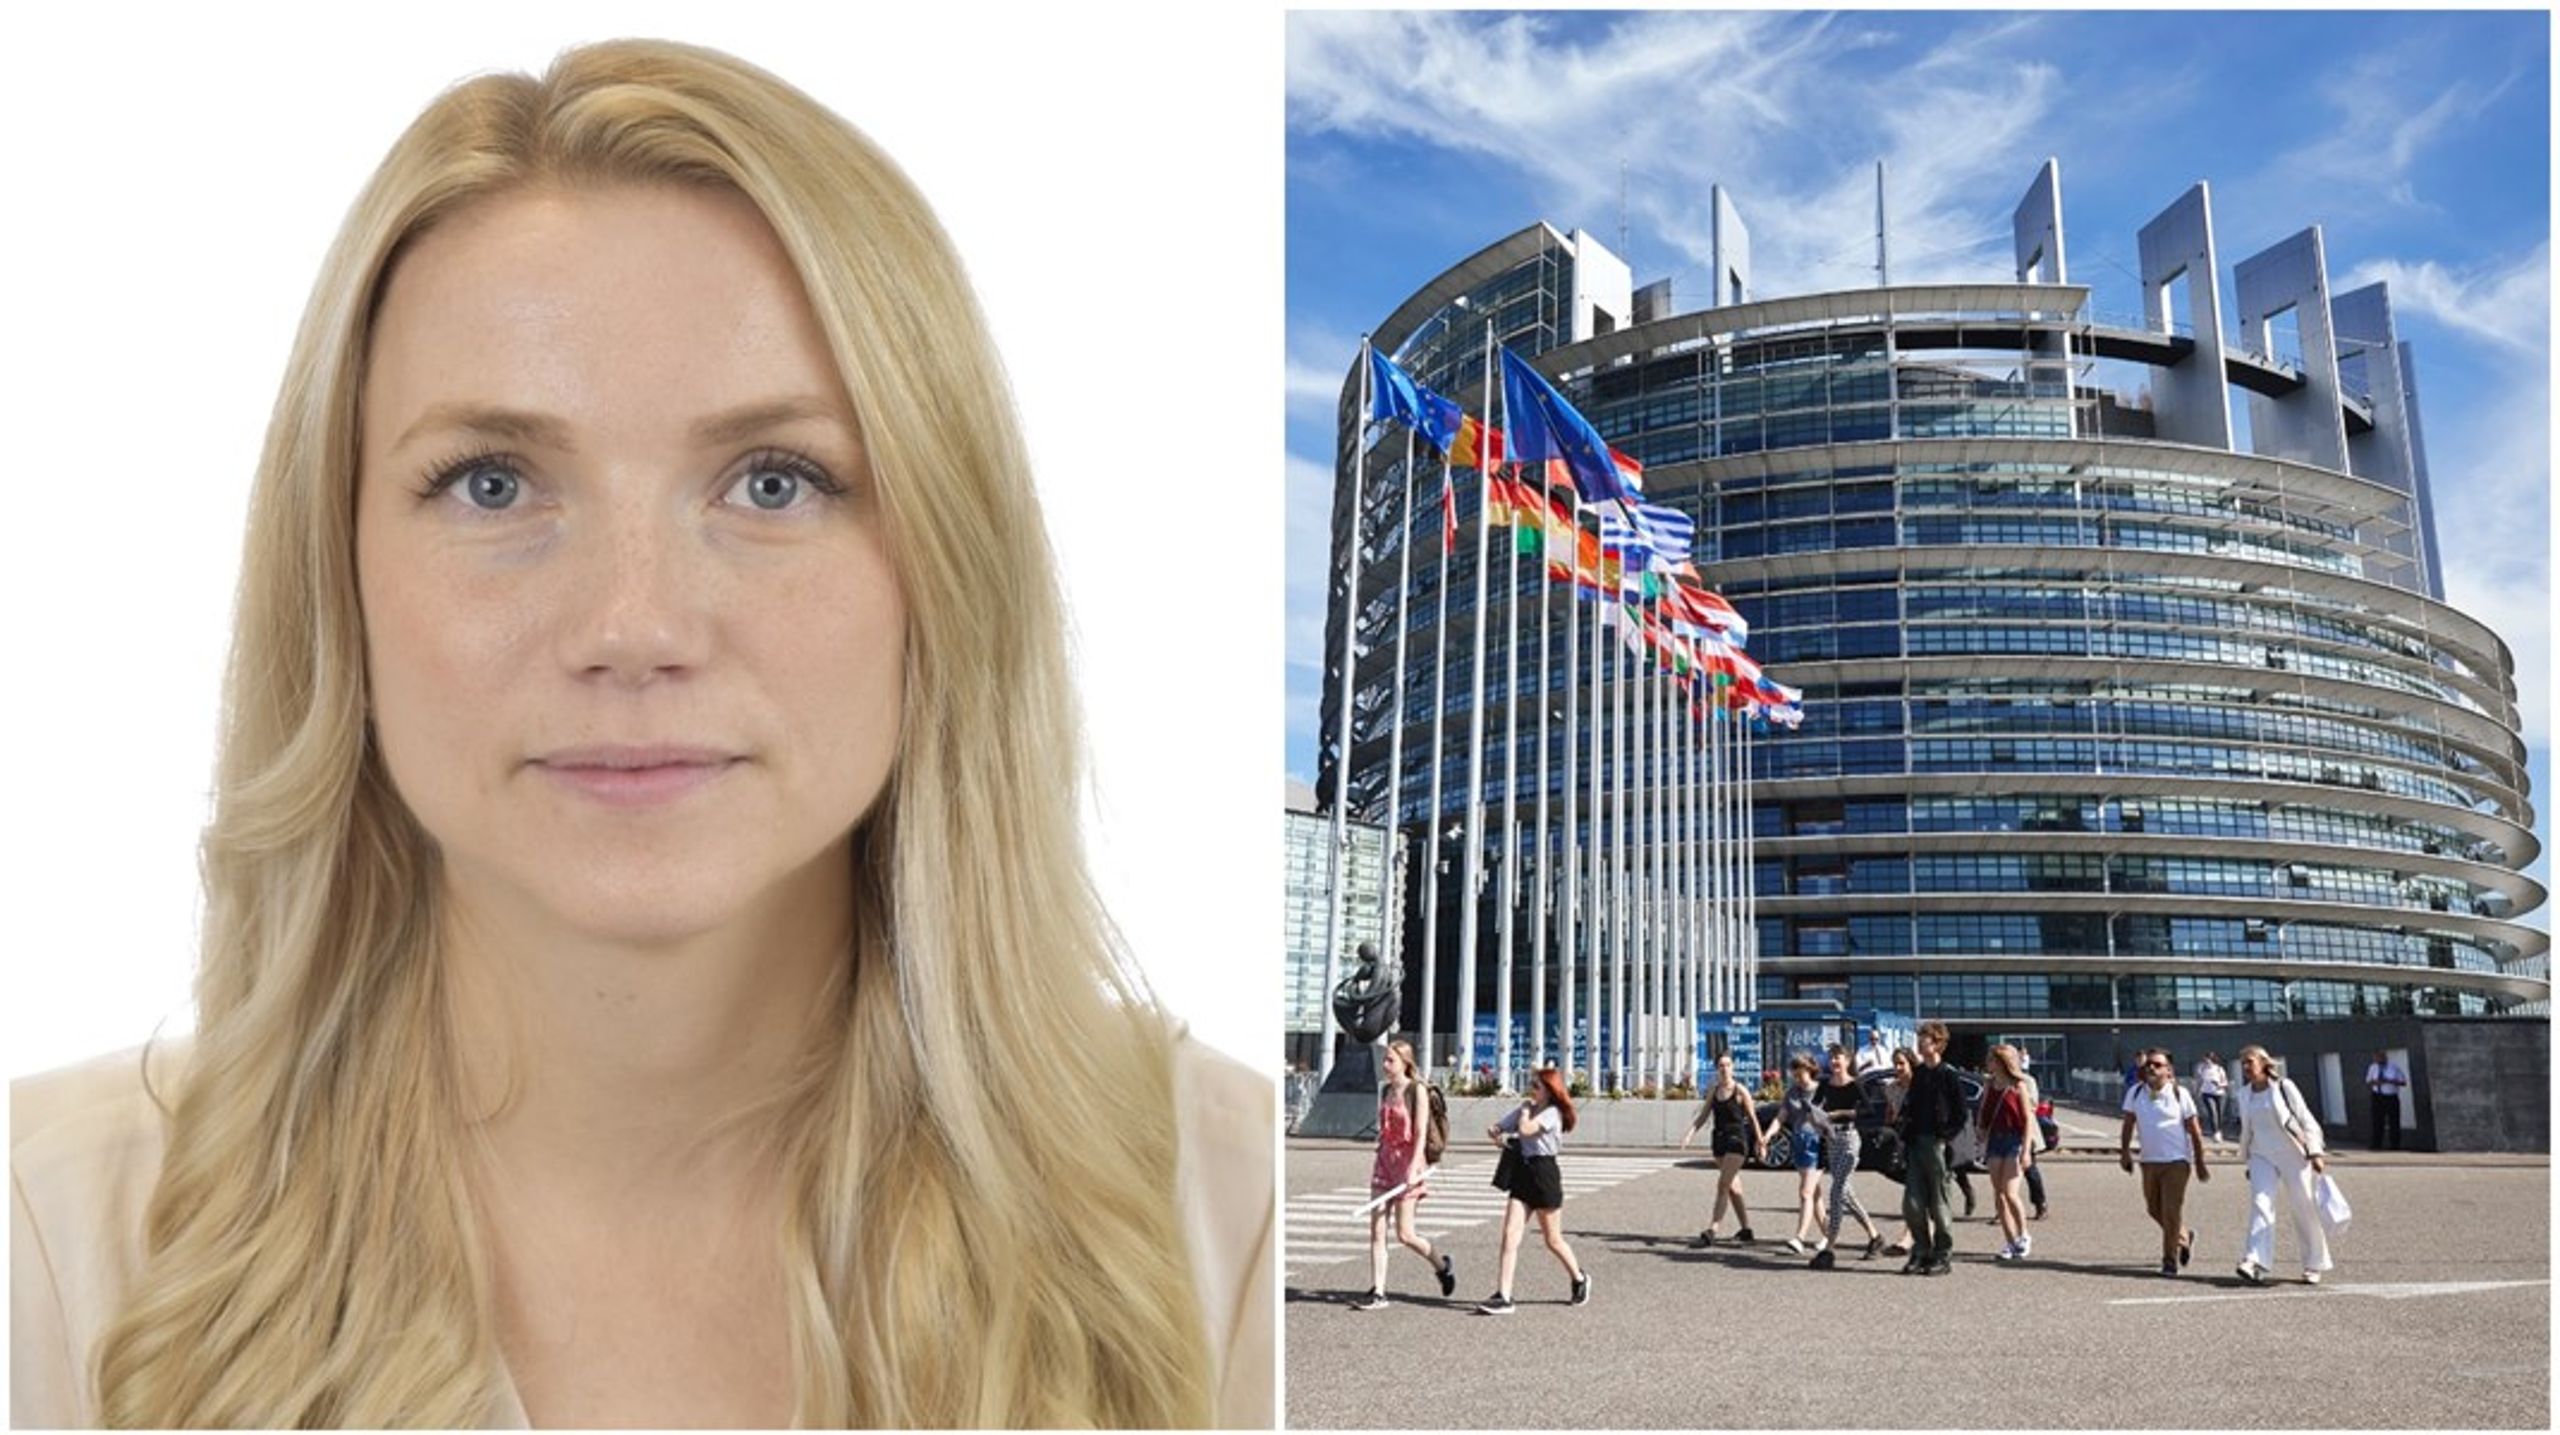 Det är oacceptabelt att ett beslut i Europaparlamentet kan leda till så omfattande negativa konsekvenser för Sverige, skriver Beatrice Timgren (SD).